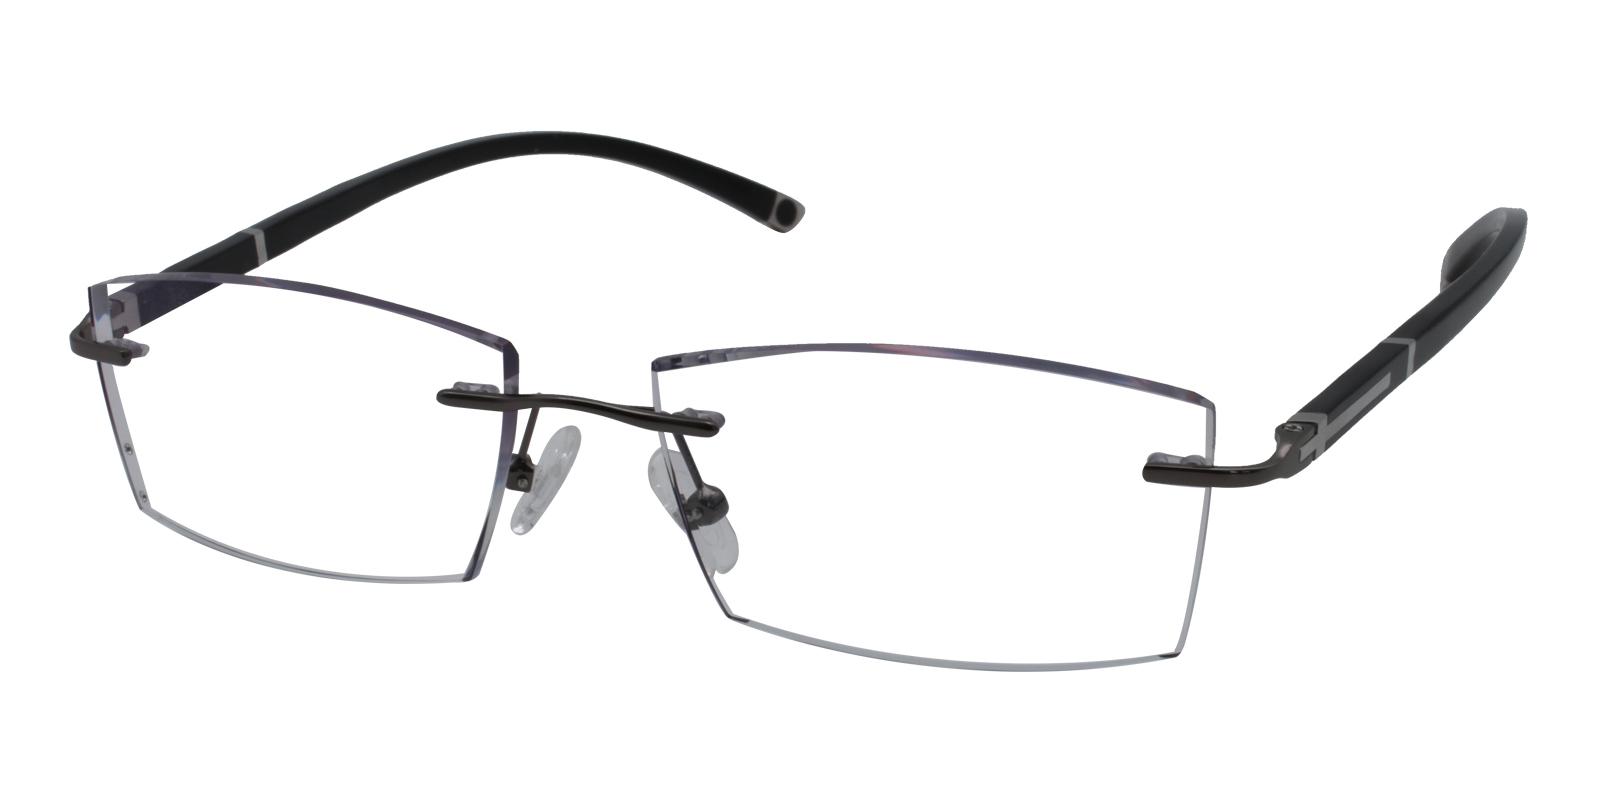 John Gray Titanium Eyeglasses , NosePads Frames from ABBE Glasses